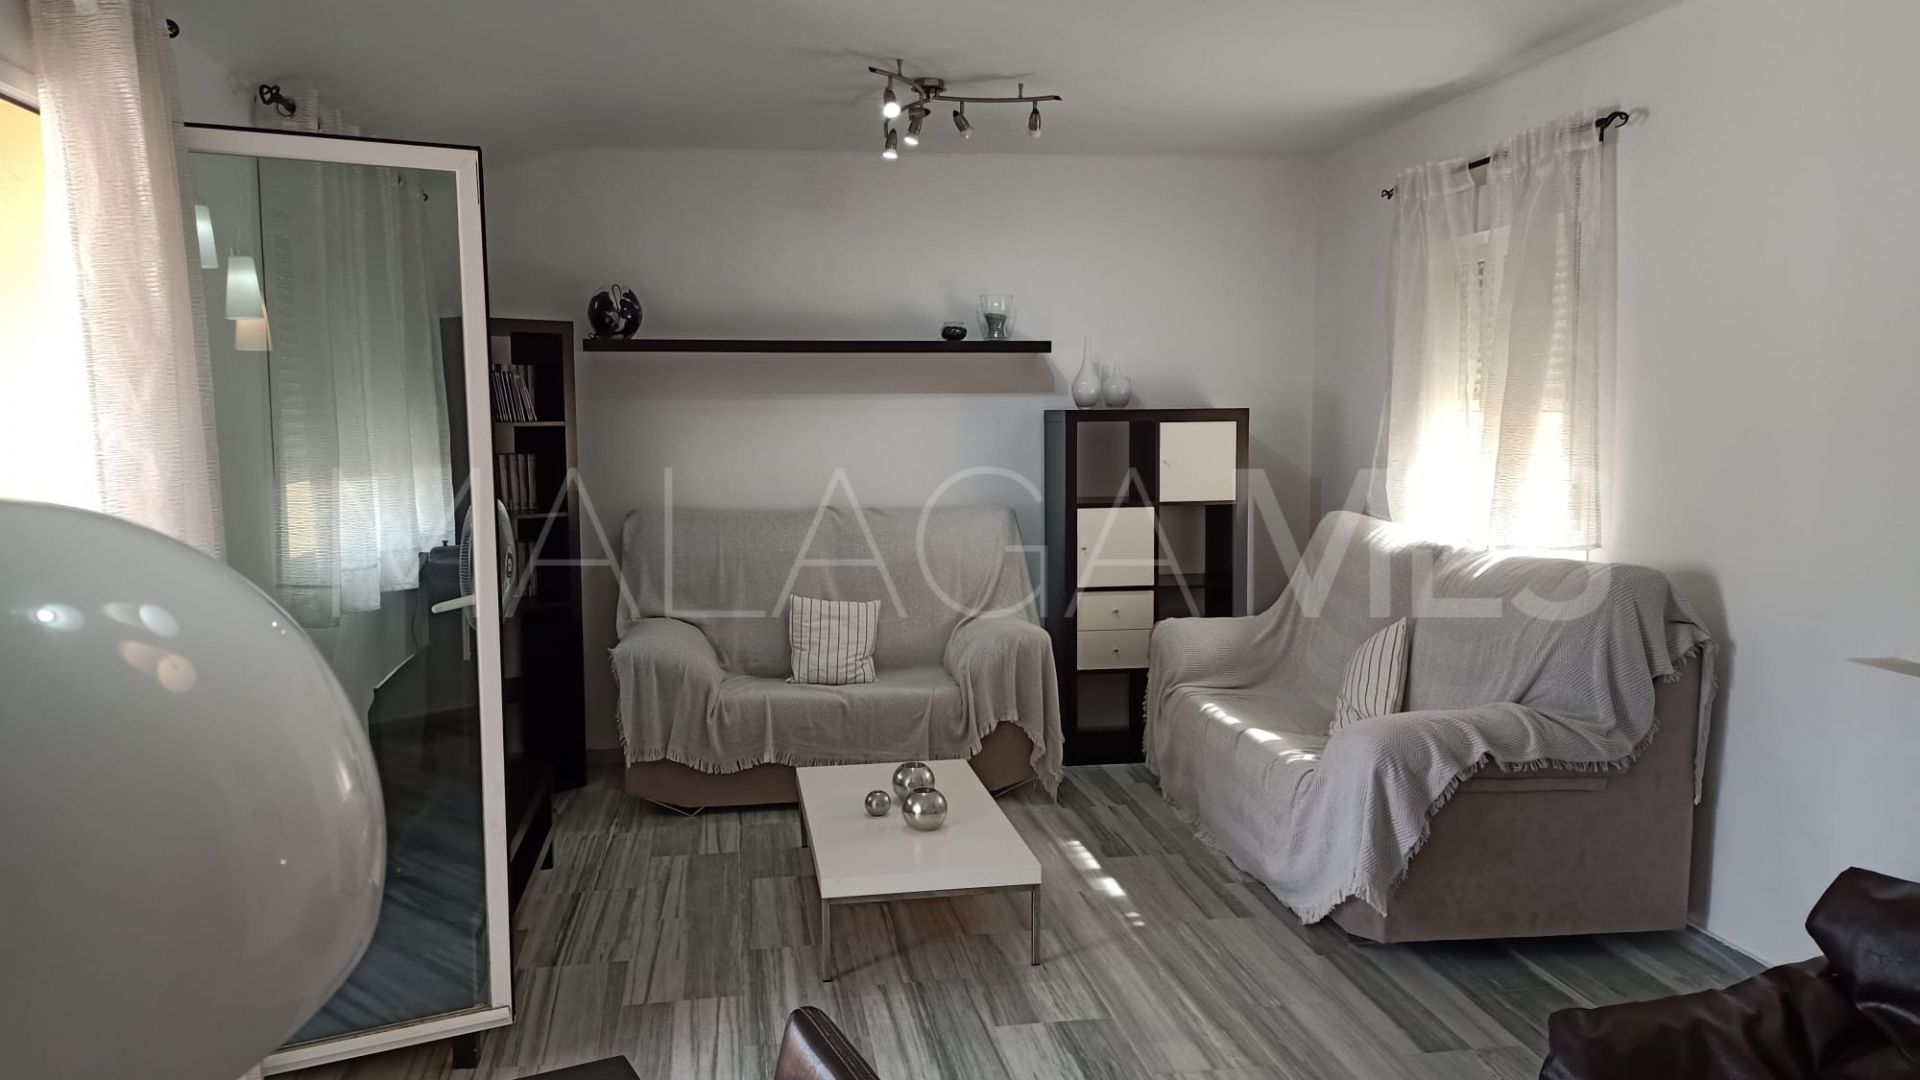 2 bedrooms duplex in Sabinillas for sale